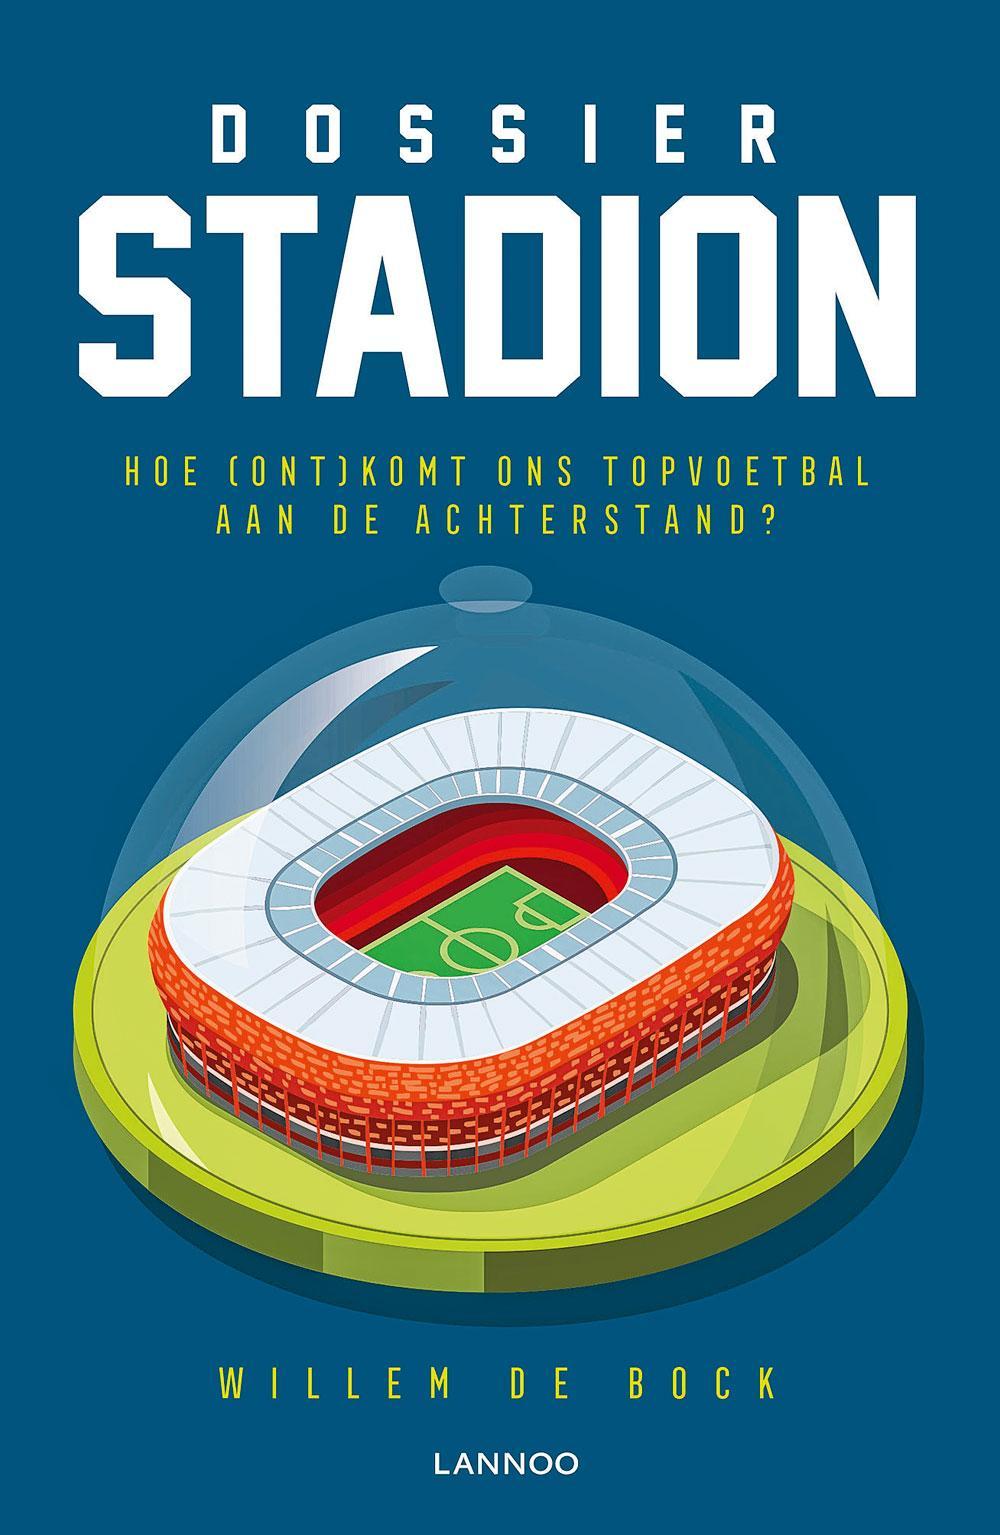 Dossier stadionbouw: 'Het voetbal moet zich beter verkopen'